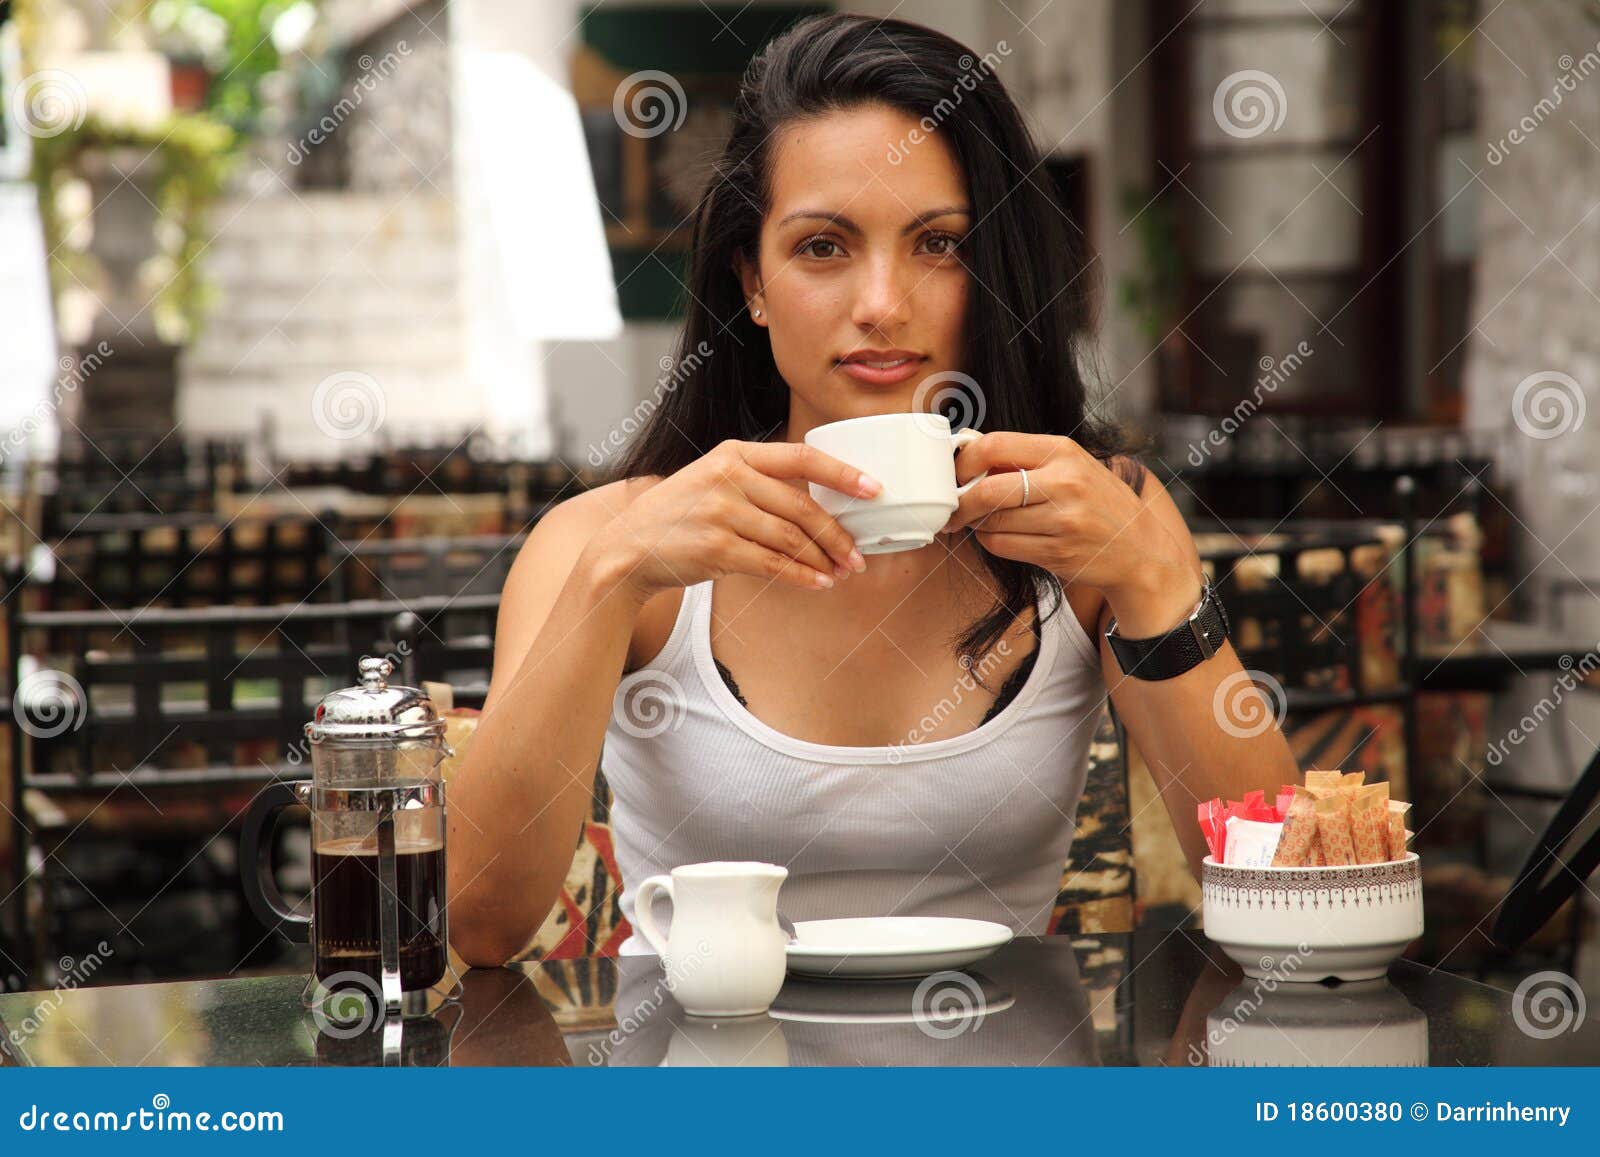 Café bebendo da mulher mediterrânea bonita. Mulher mediterrânea nova bonita que senta-se no café ao ar livre do pátio, café fresco bebendo